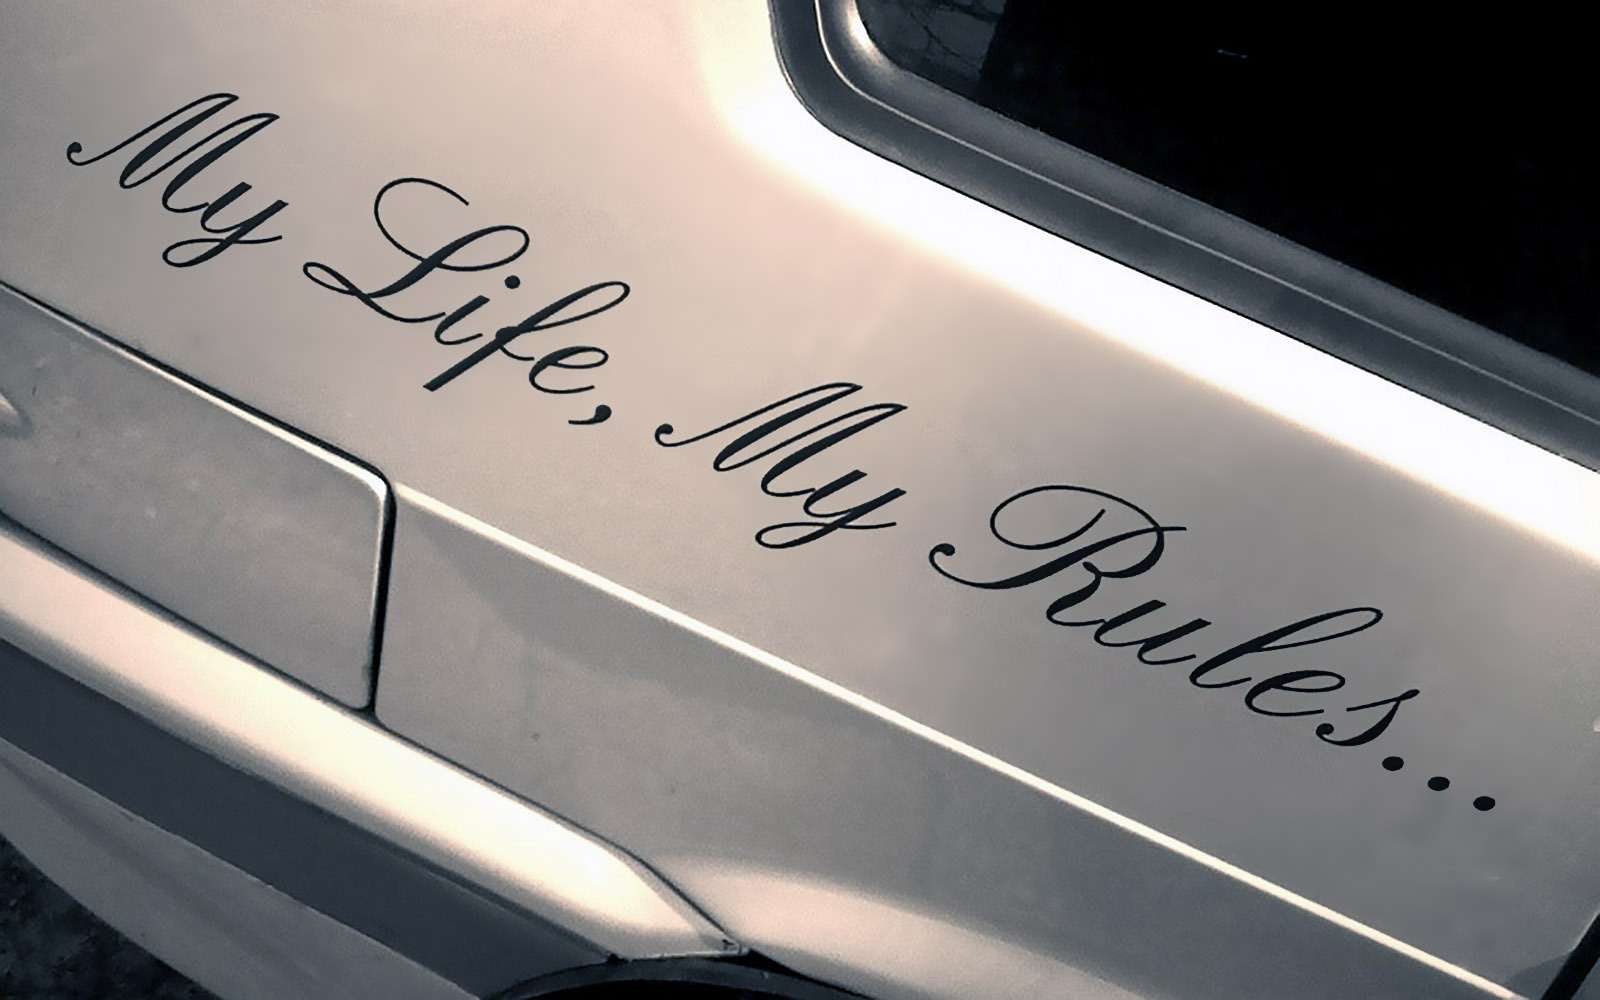 Наклейка my Life my Rules. My Life my Rules наклейка на машину. Красивые надписи на машину. Наклейка на машину май лайф май рулез.